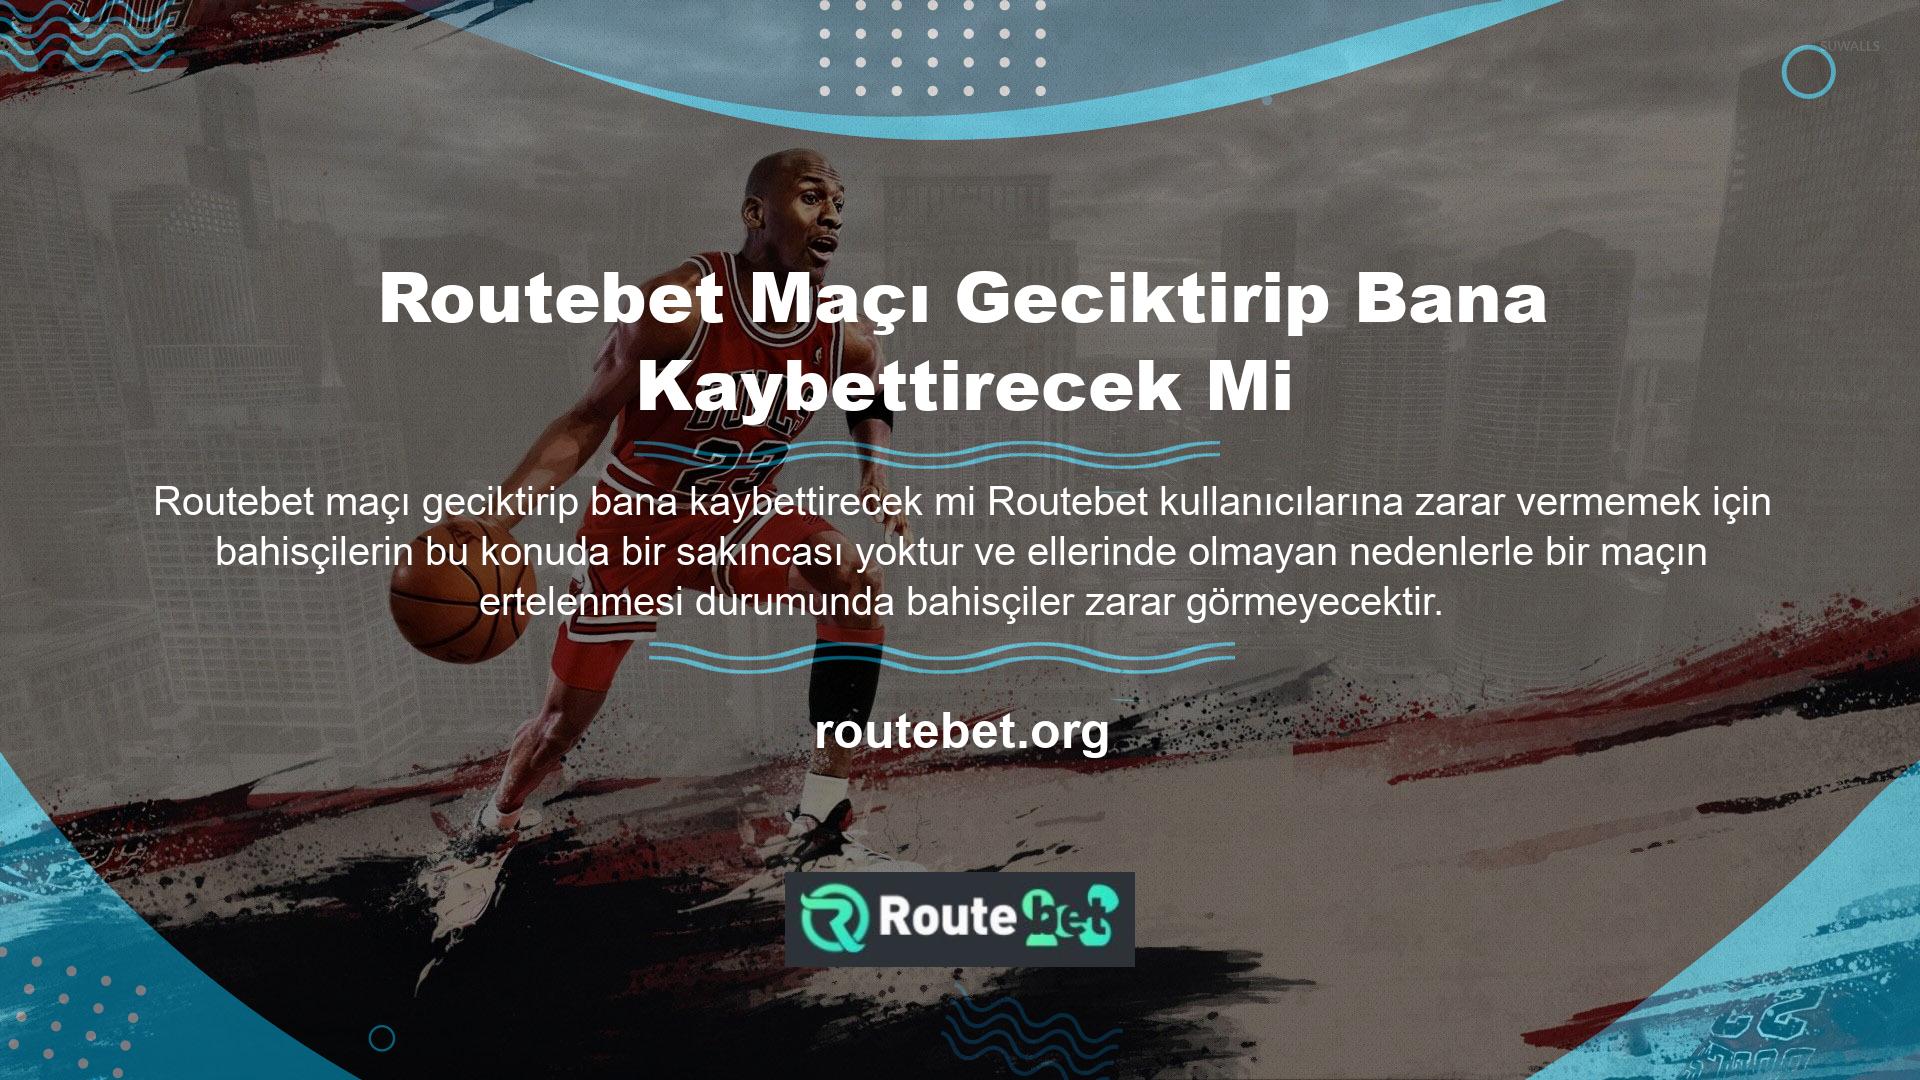 Routebet sorusu an itibariyle net bir şekilde yanıtlanarak kullanıcıların mağdur olmaması sağlandı